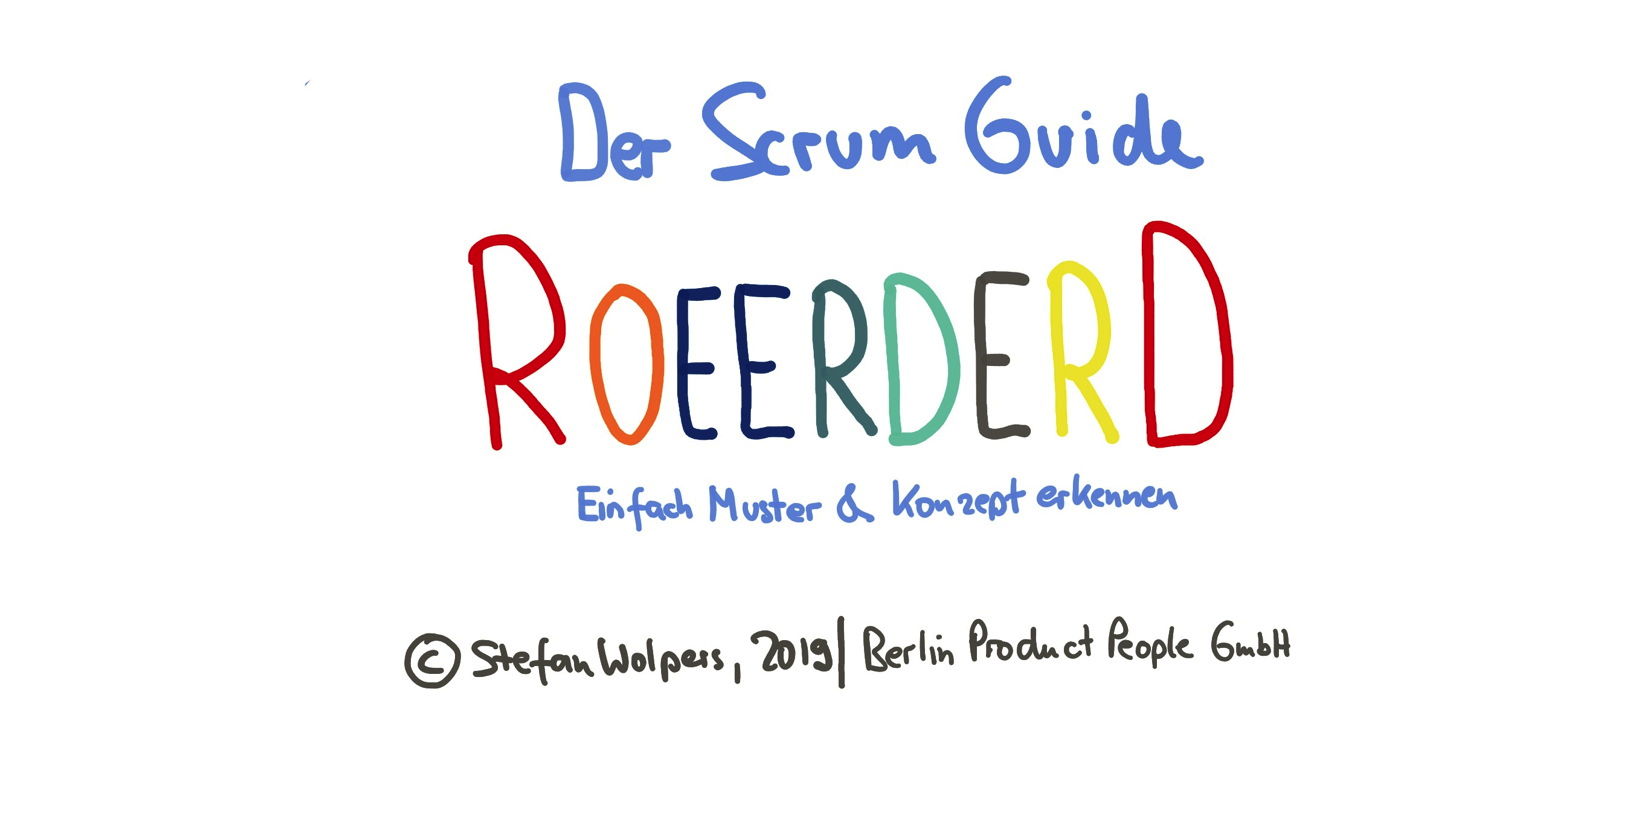 Scrum Guide Reordered — einfach Muster und Konzepte erkennen — Berlin Product People GmbH